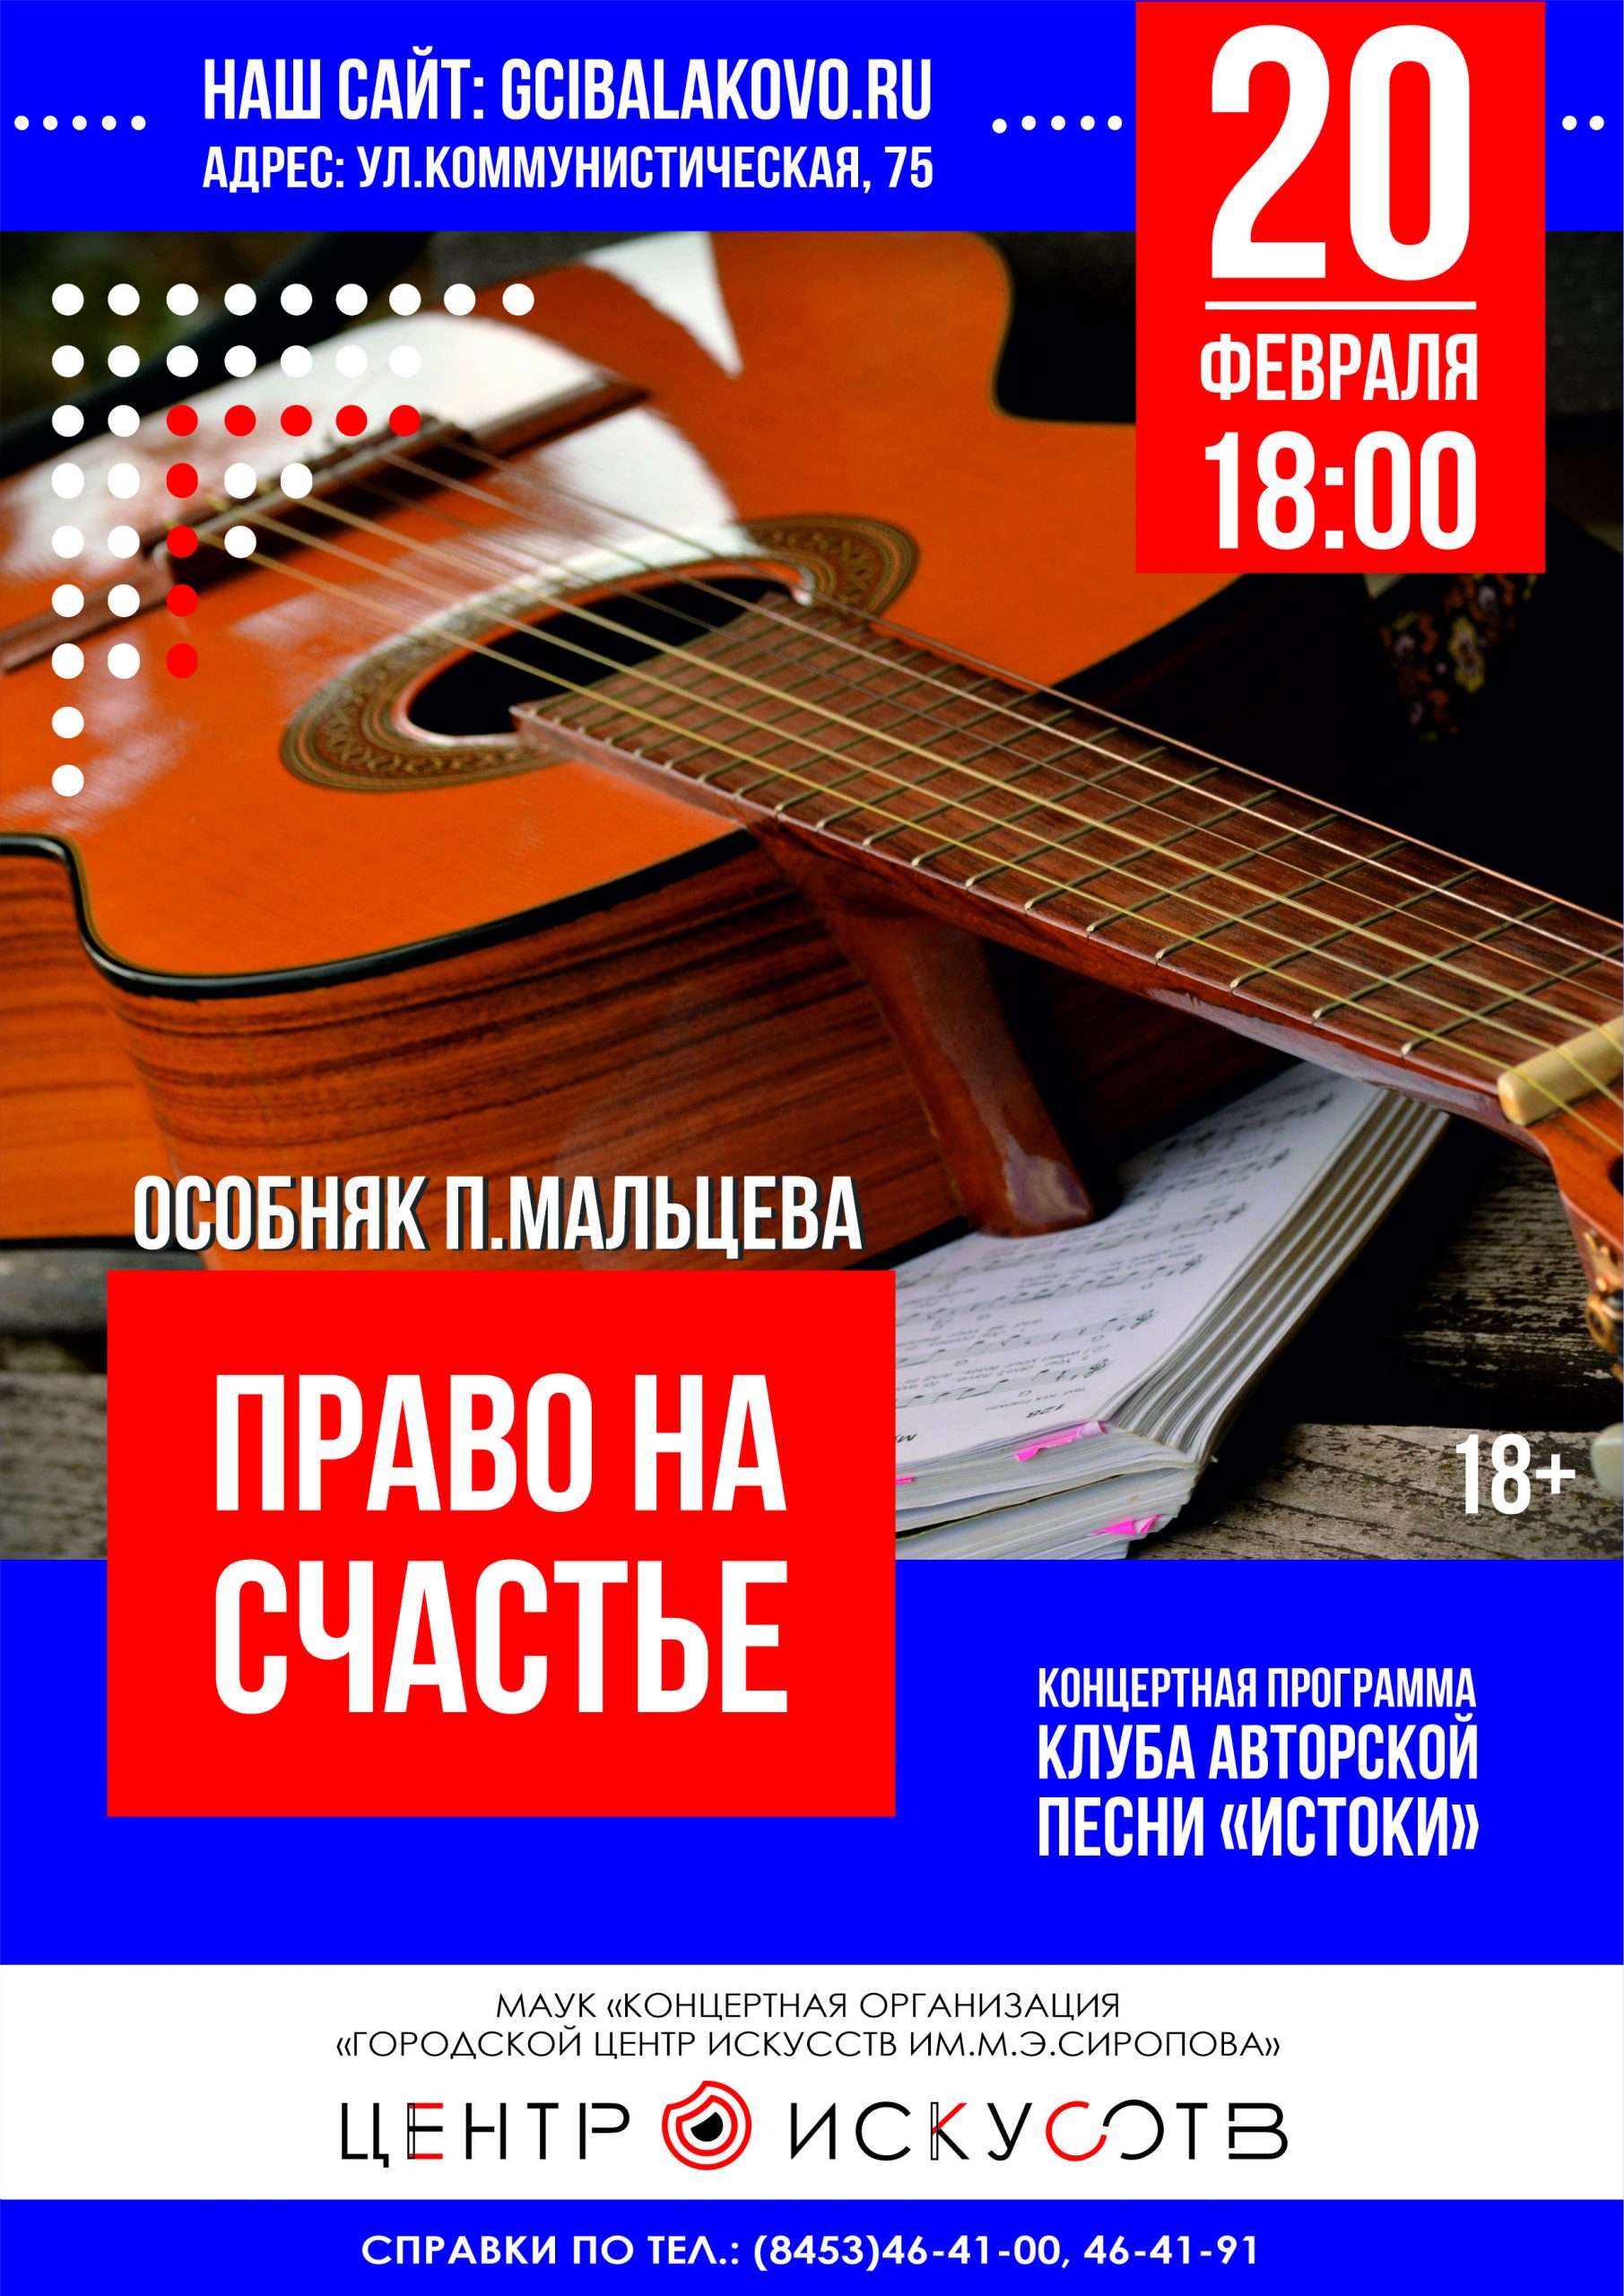 20 февраля в Особняке П.Мальцева пройдёт очередная встреча с участниками Клуба авторской песни «Истоки» под названием «Право на счастье».